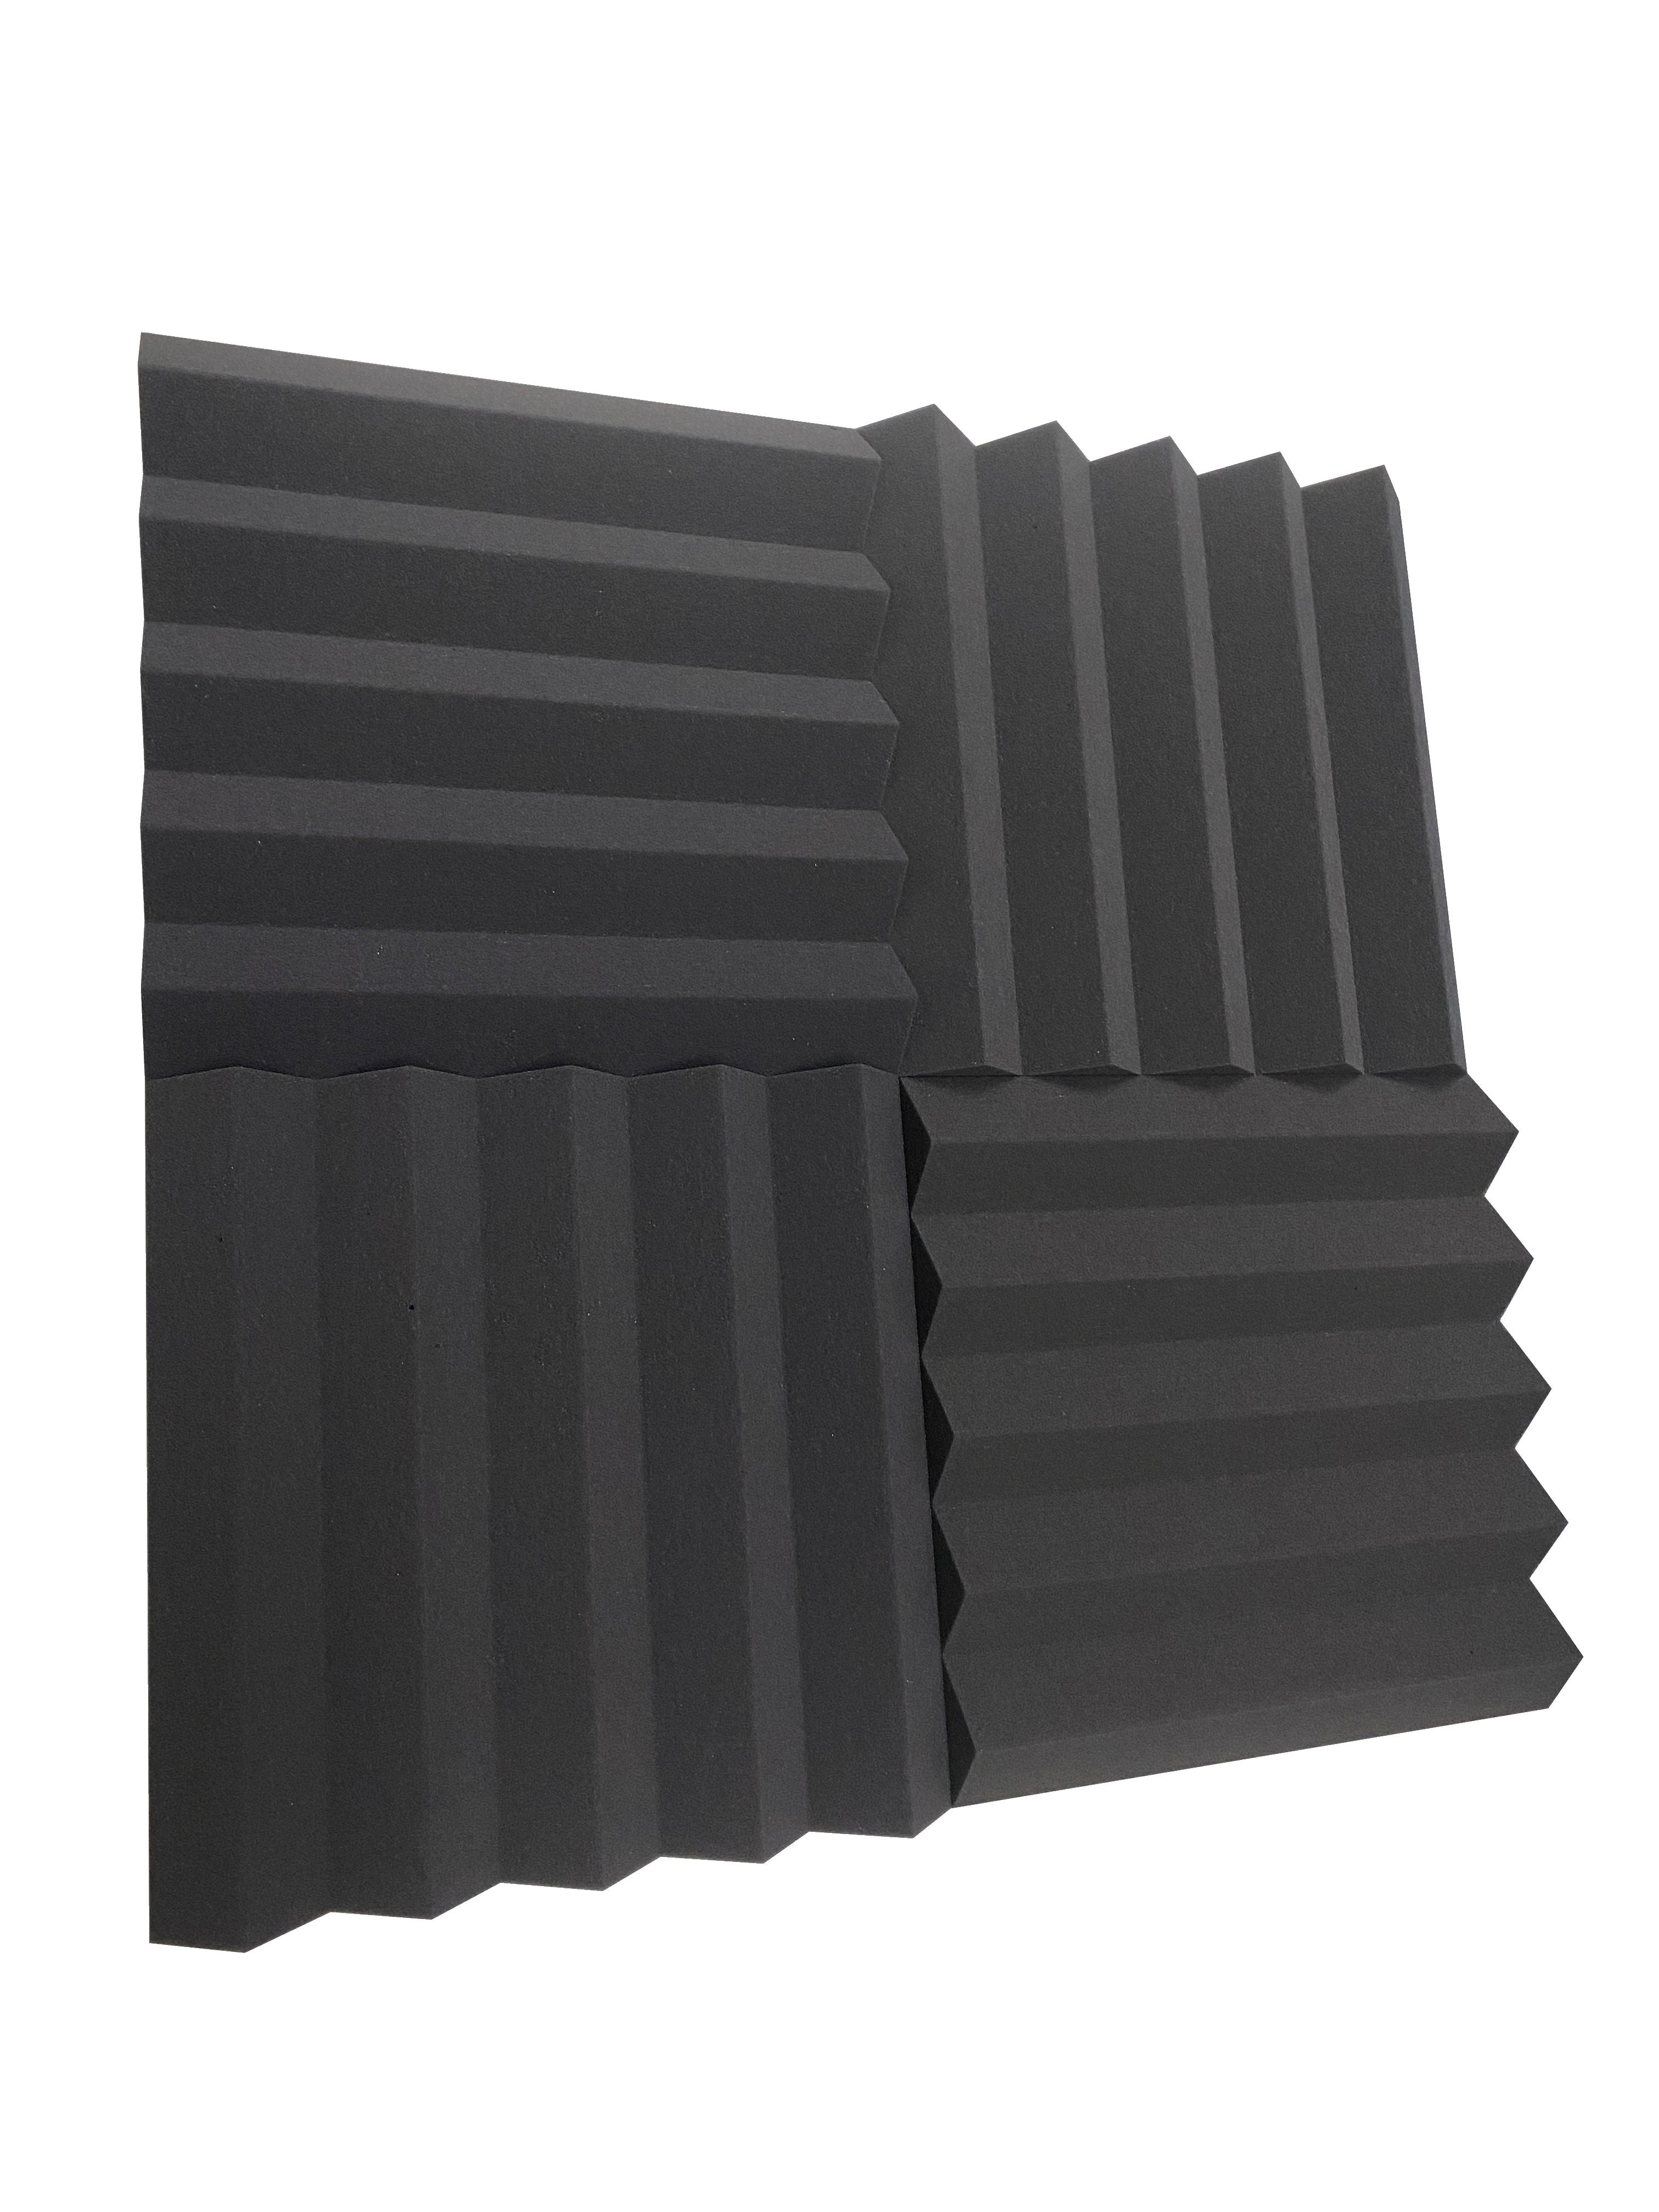 Acheter gris-fonce Wedge PRO 15&quot; Acoustic Studio Kit de dalles en mousse - 72 dalles, couverture de 10,44 m²